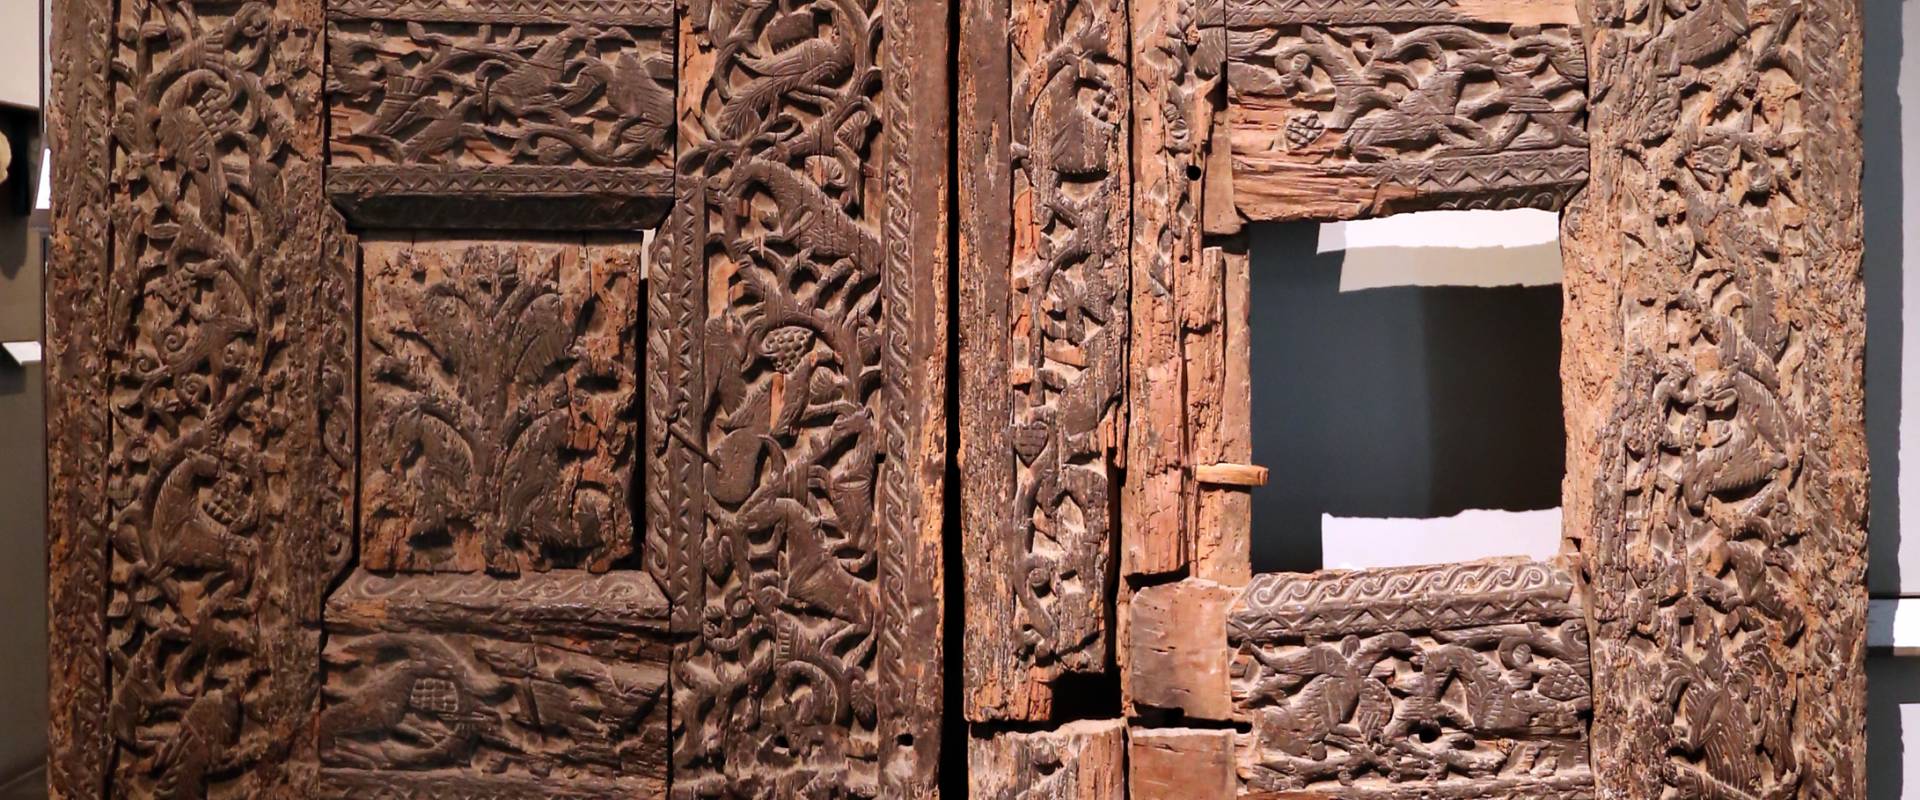 Portale di san bertoldo, in legno intagliato, dalla chiesa di s. alessandro a parma, x secolo 01 photo by Sailko